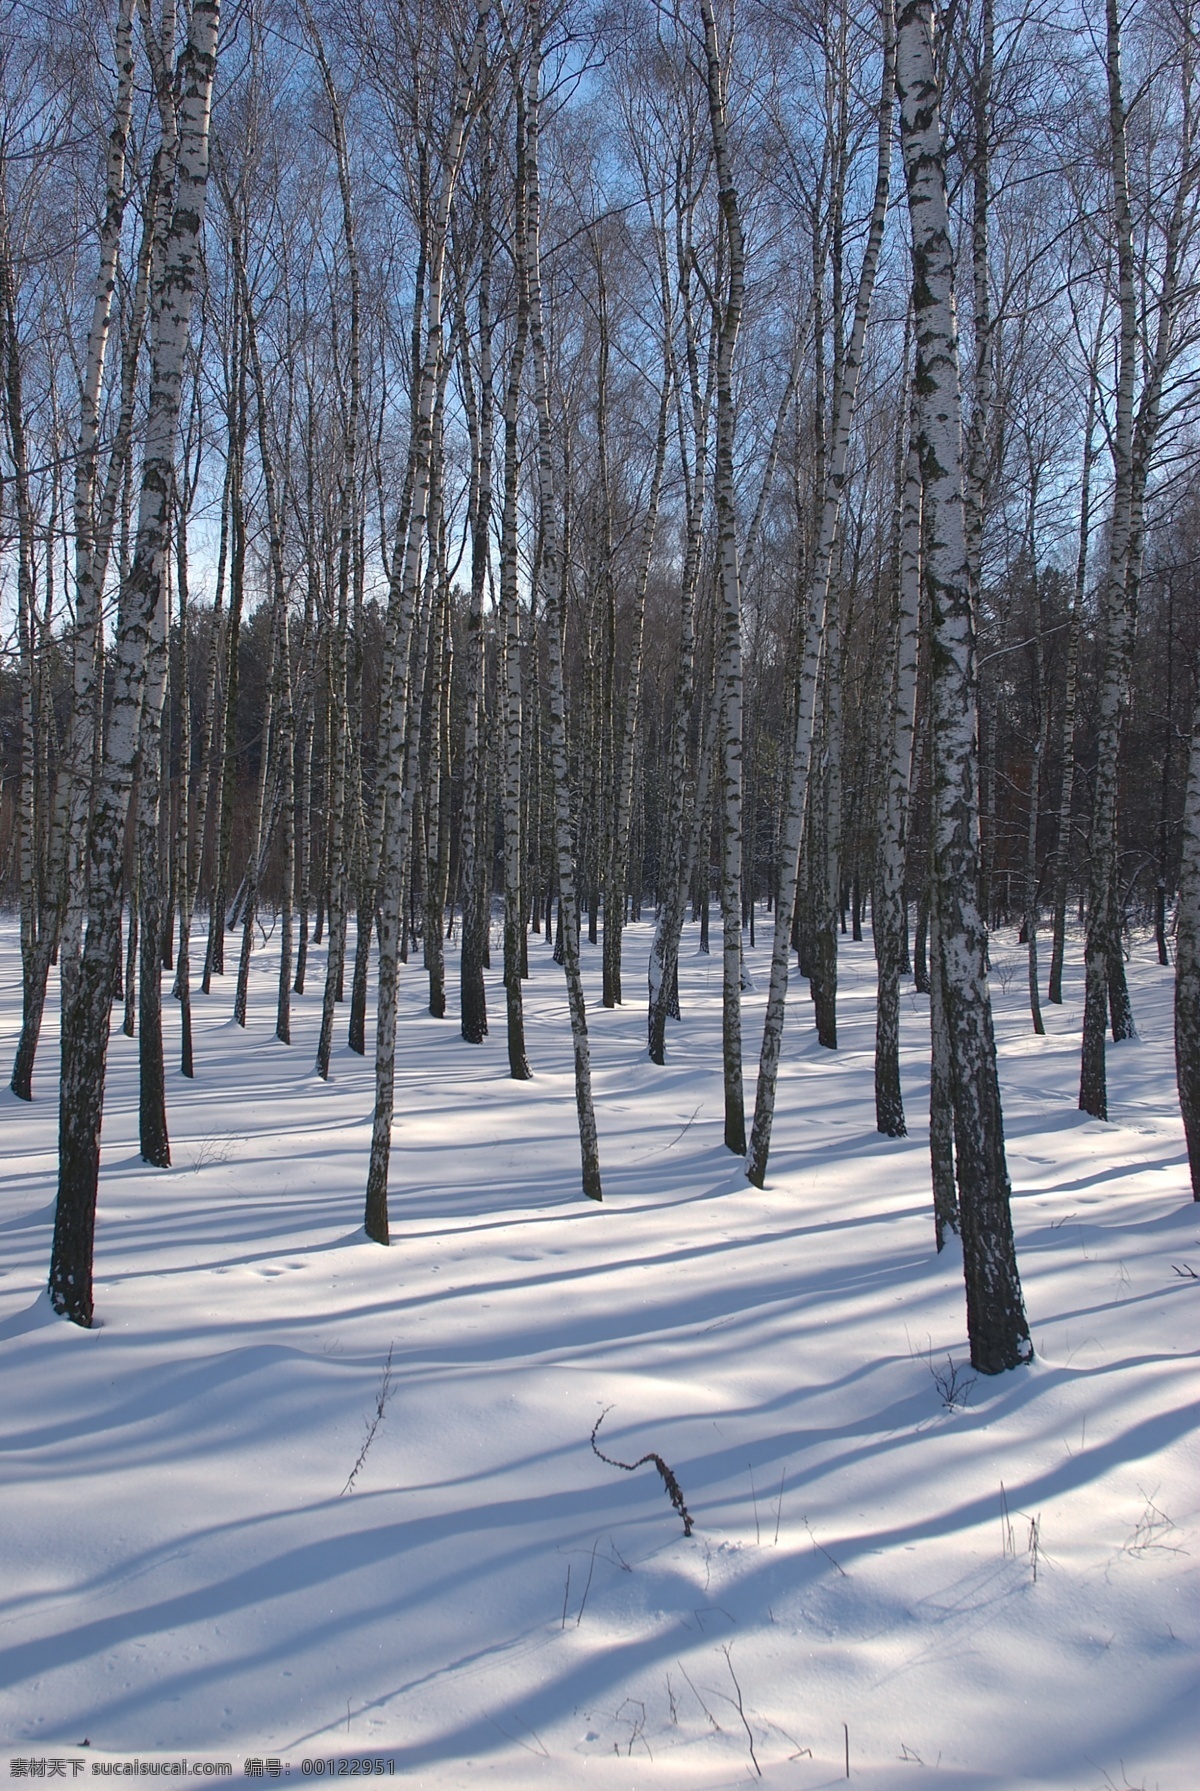 美丽 冬天 雪景 冬天雪景 冬季 美丽风景 美丽雪景 白雪 积雪 风景摄影 树木 树林 雪地 雪景图片 风景图片